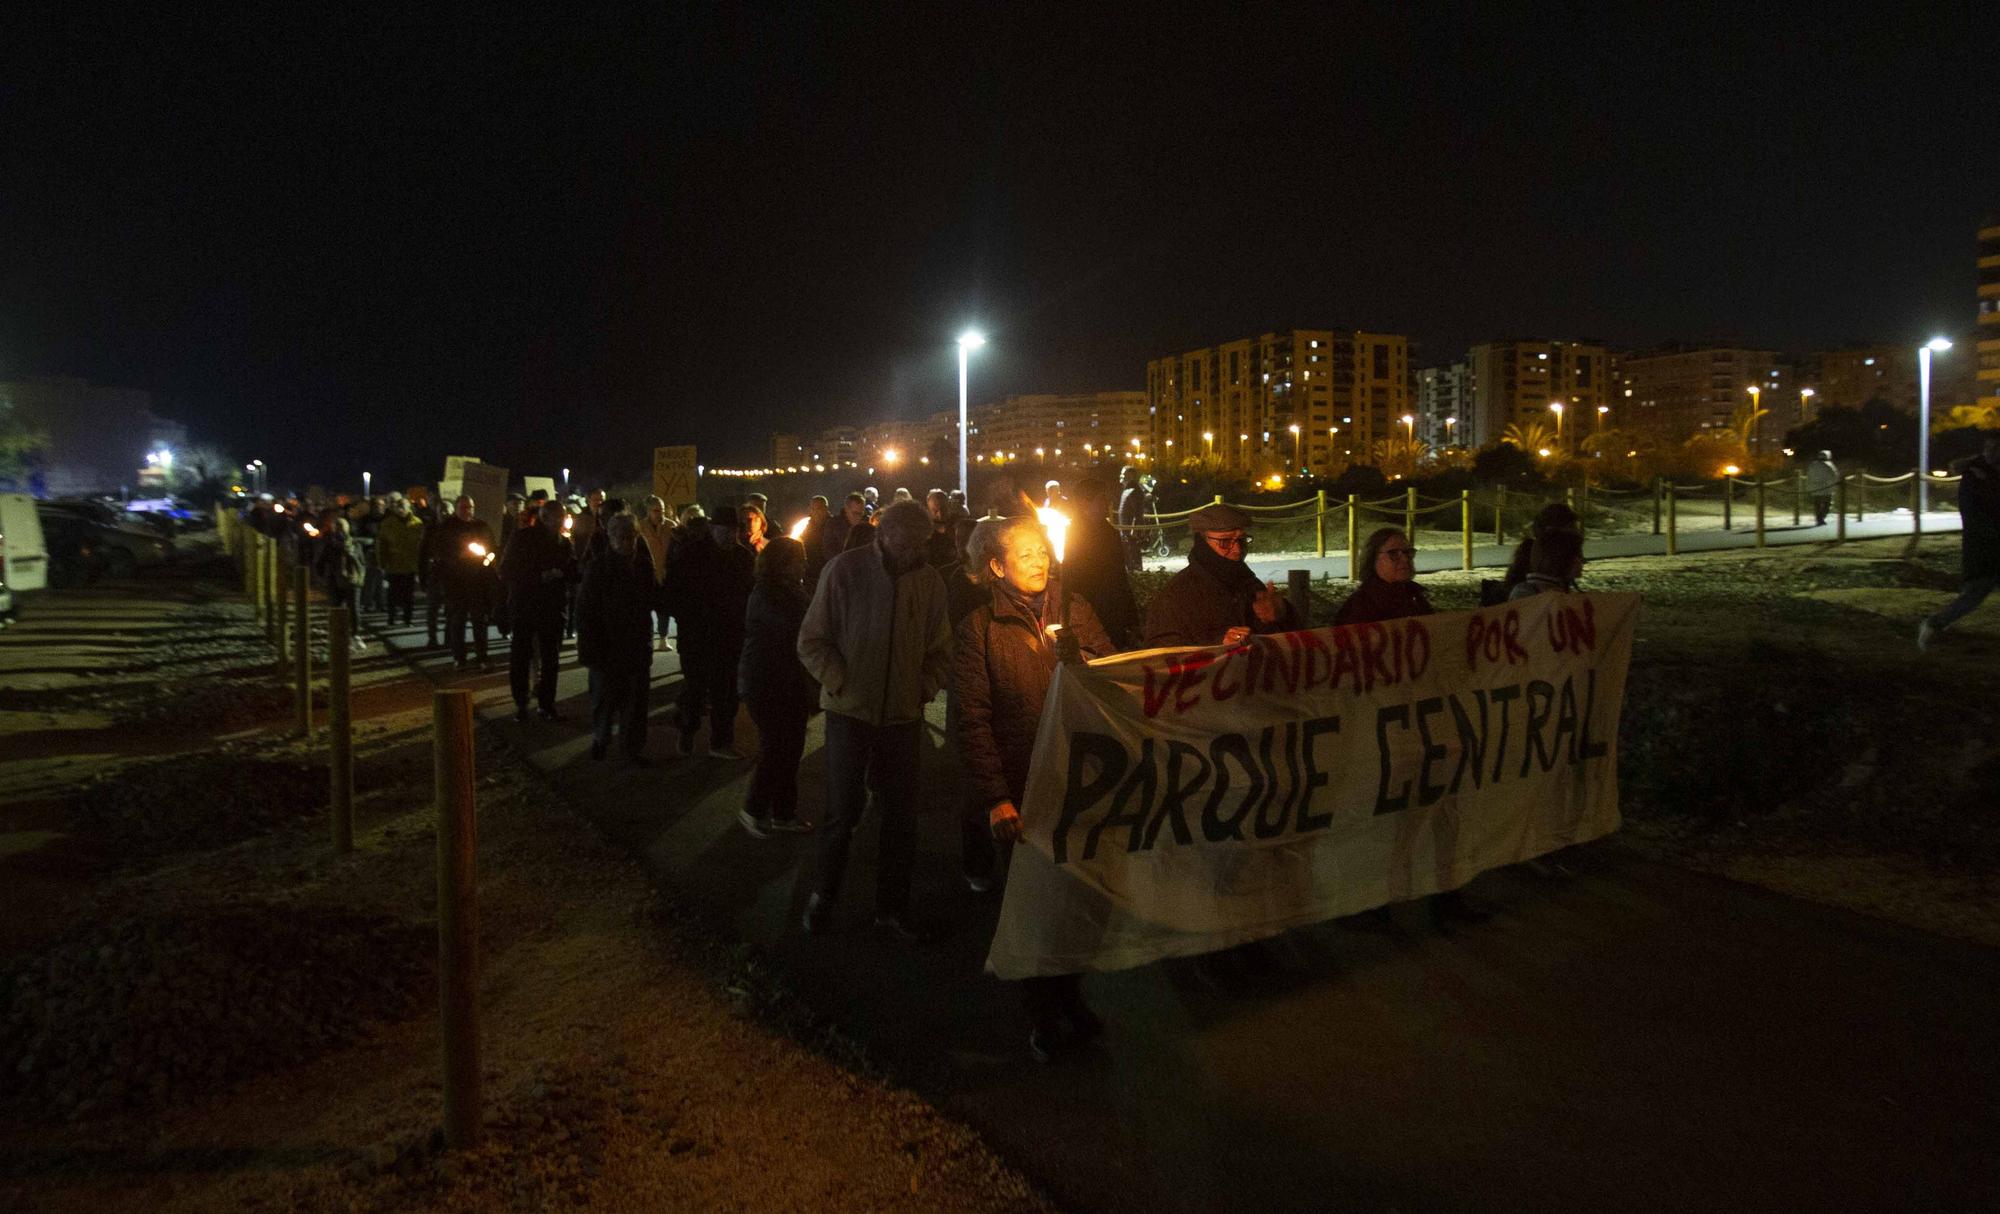 Antorchas para reivindicar el Parque Central "definitivo" en Alicante